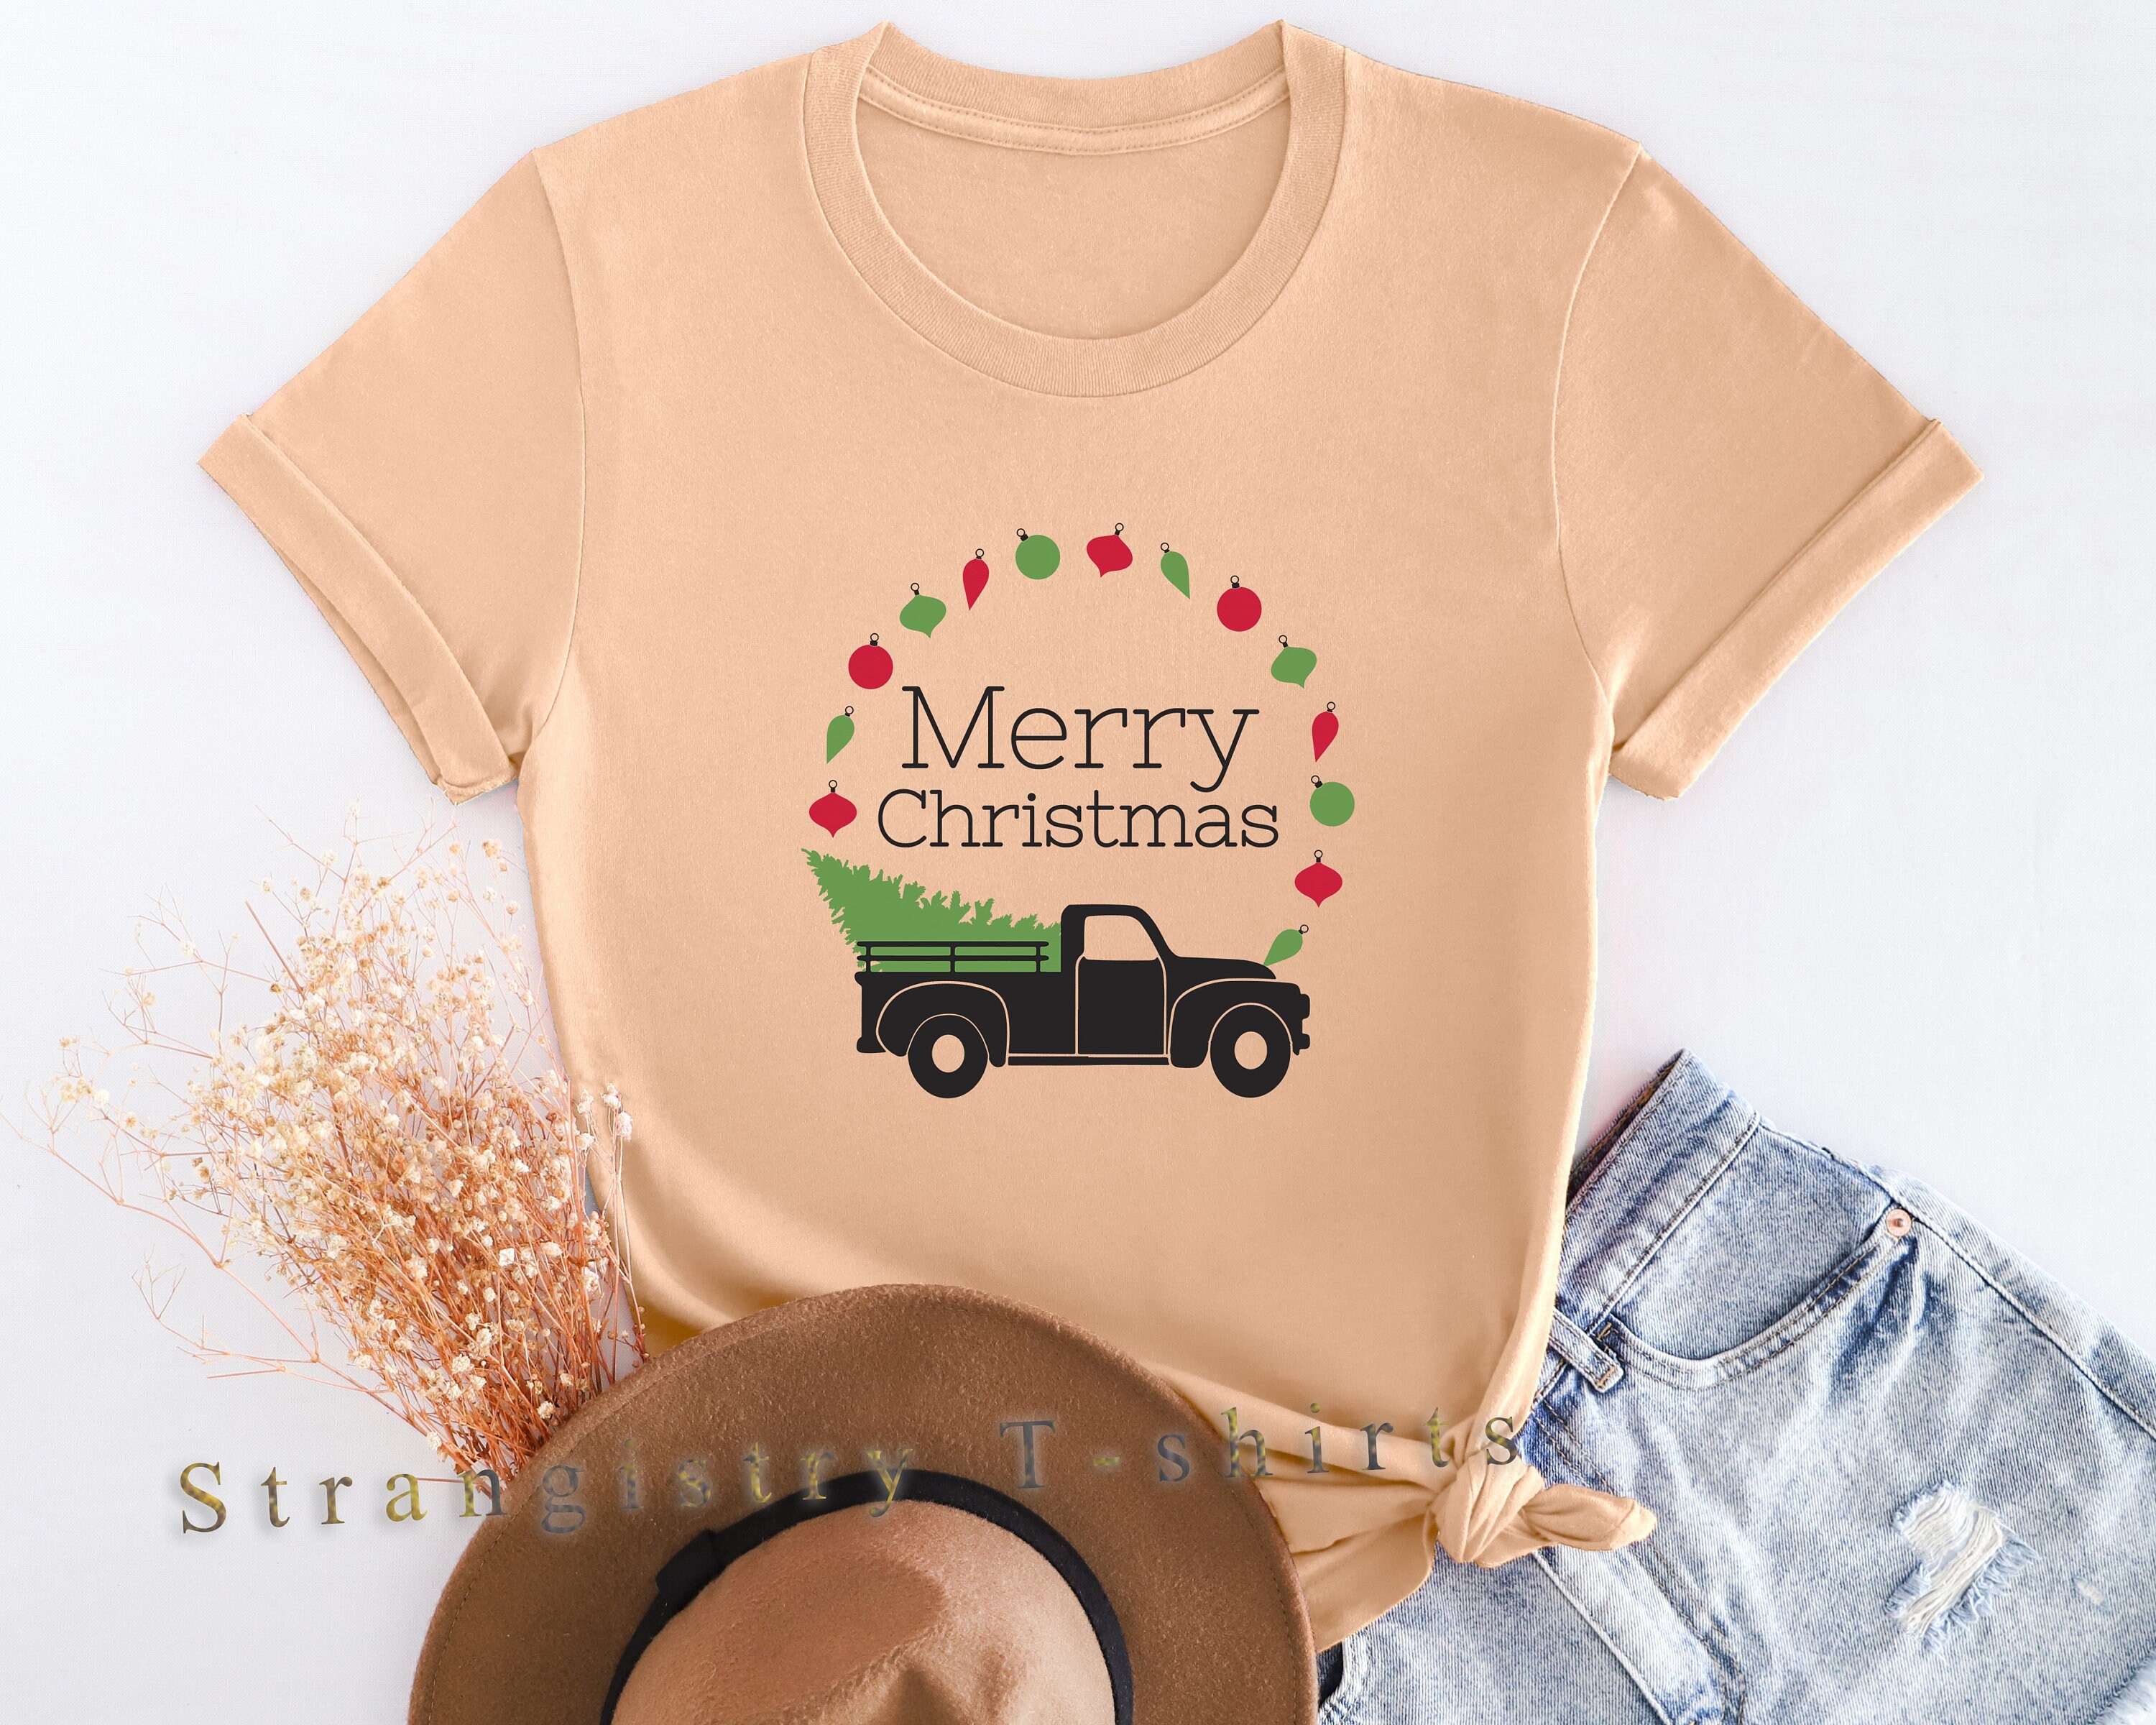 Christmas T-shirt, Christmas Truck Shirt, Christmas Tree Tee, Gift  For Christmas,  Merry Christmas Shirt,Women Holiday Shirt, Xmas Gifts